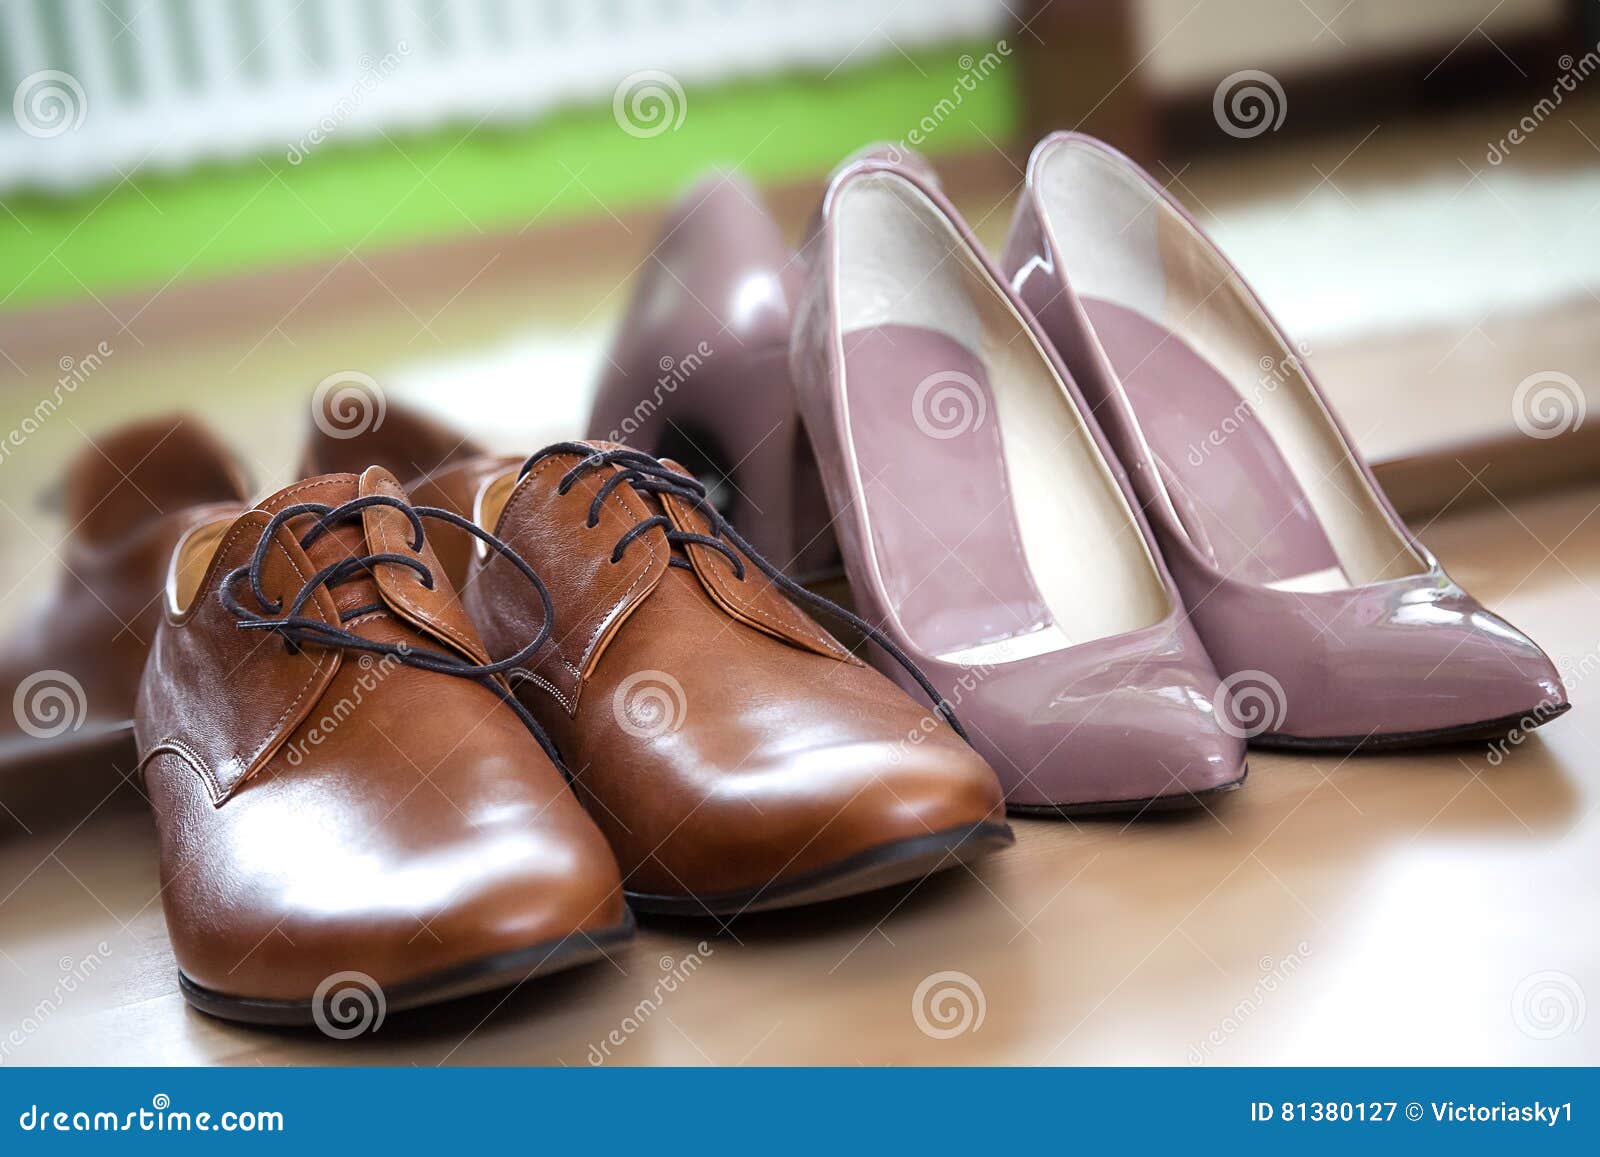 female dress shoes